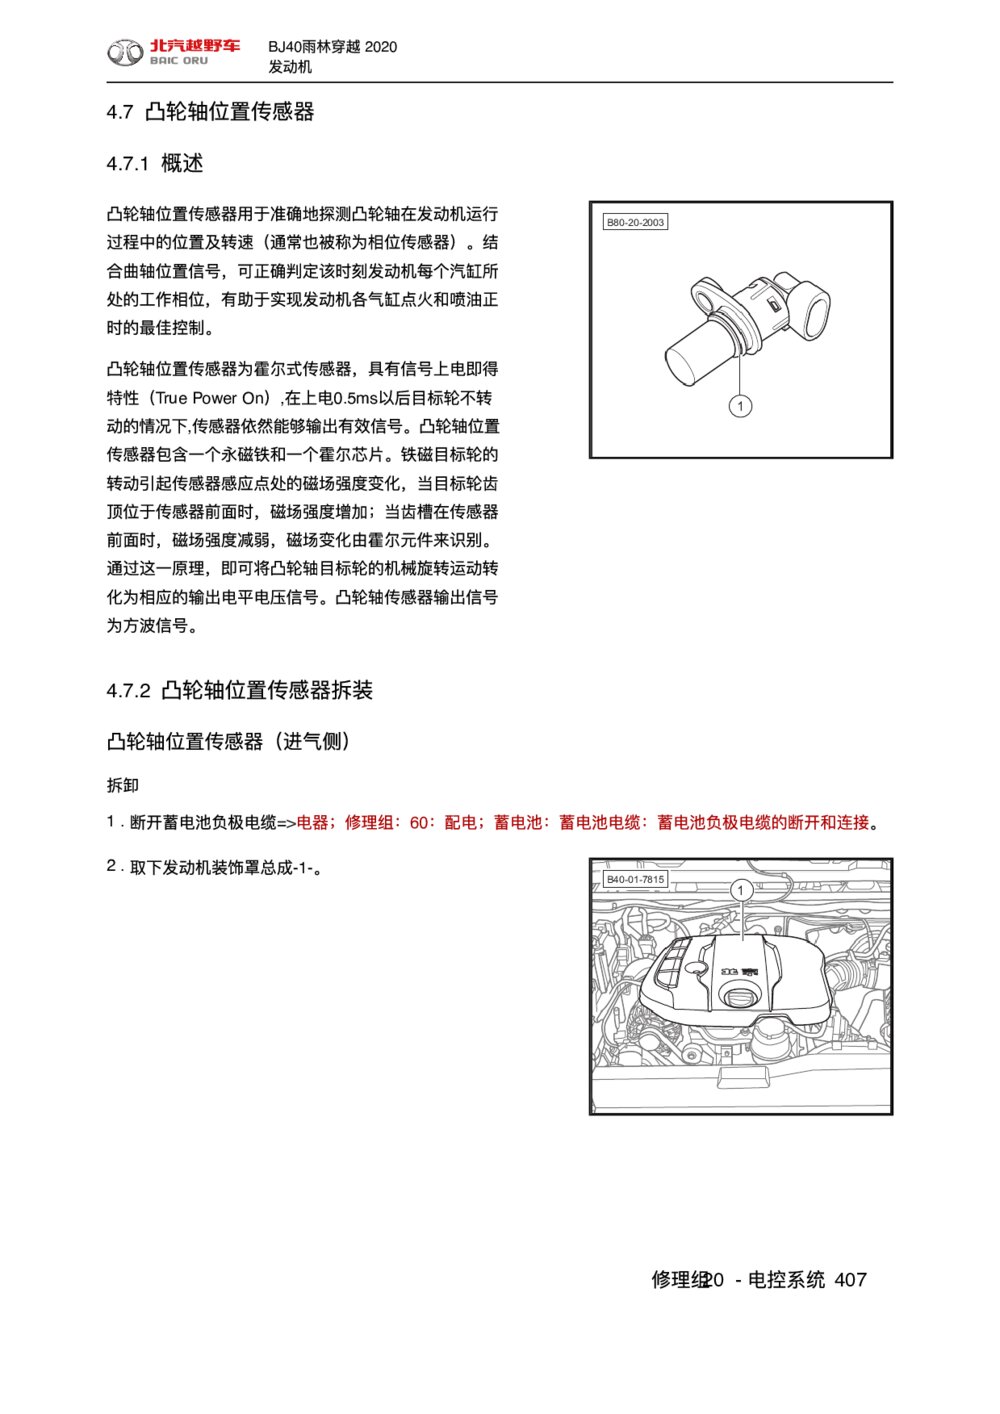 2020款北京BJ40雨林穿越版凸轮轴位置传感器手册